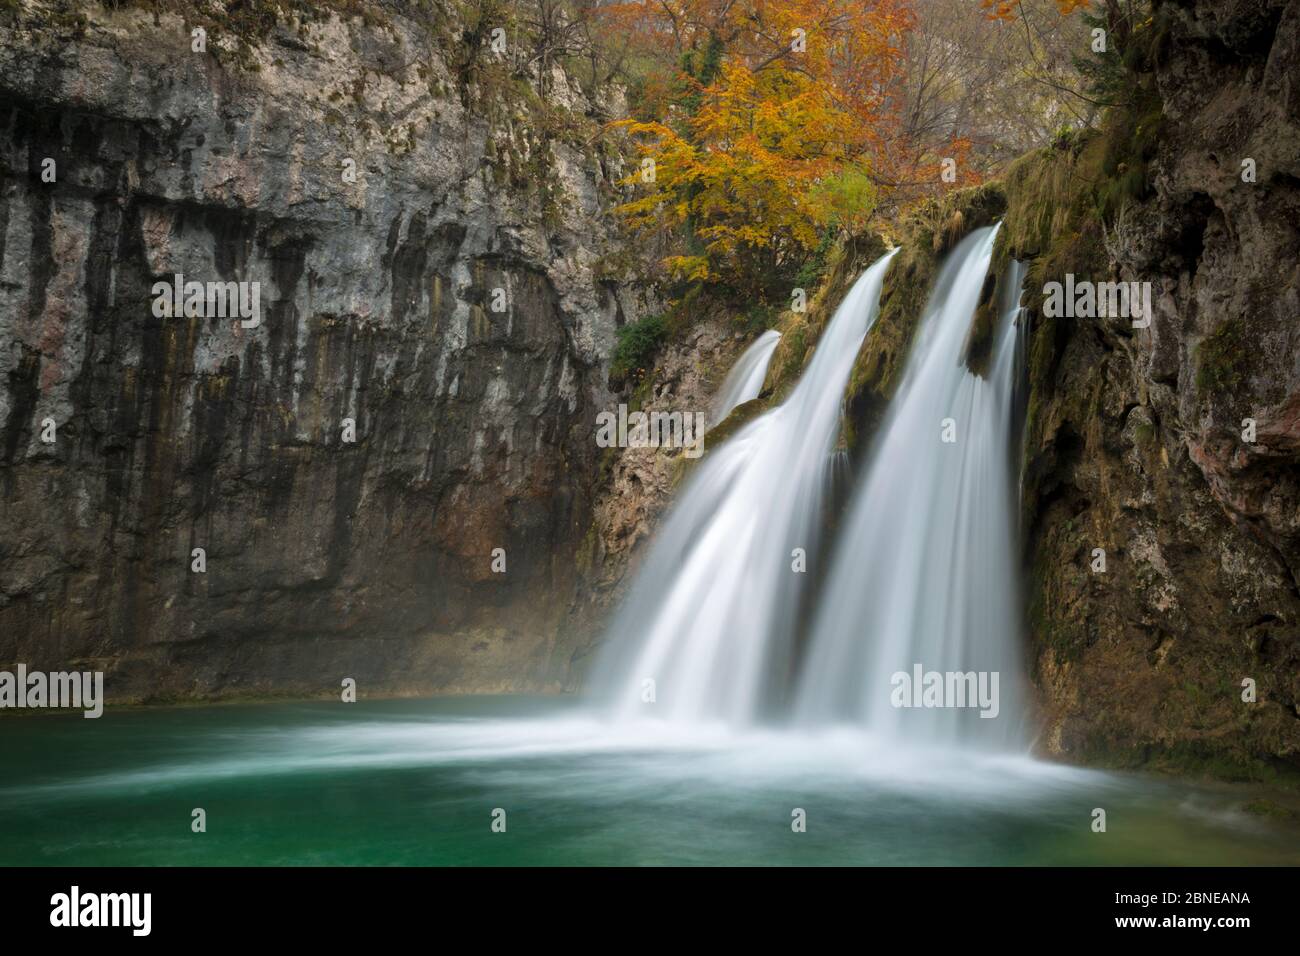 Cascade sous les lacs inférieurs, parc national des lacs de Plitvice, Croatie. Novembre. Banque D'Images